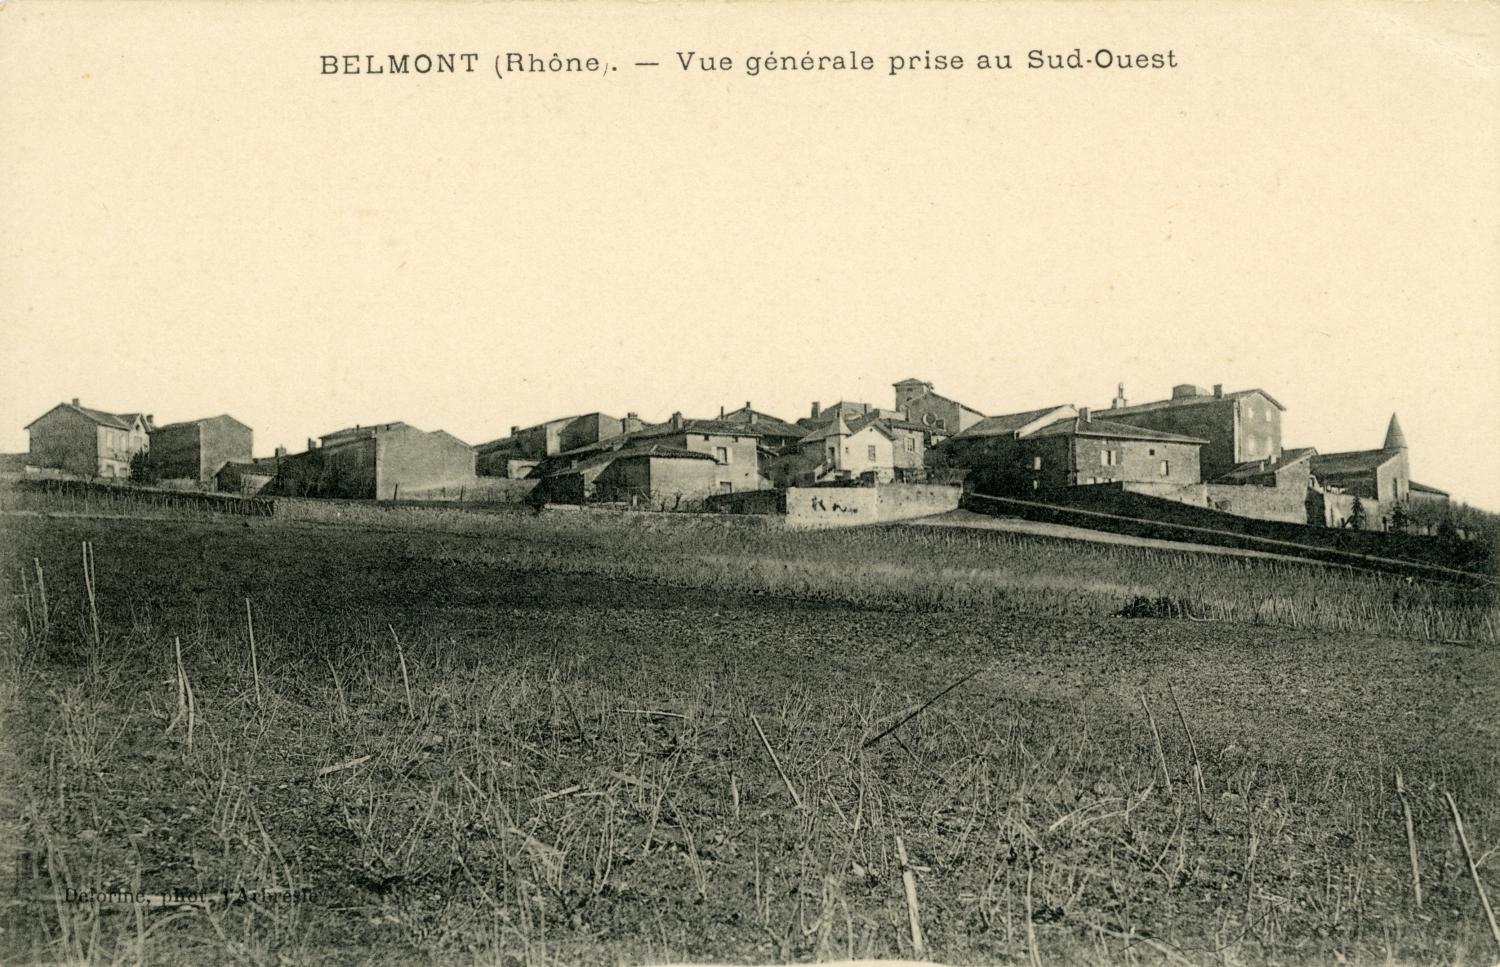 Belmont (Rhône). - Vue générale prise au Sud-Ouest